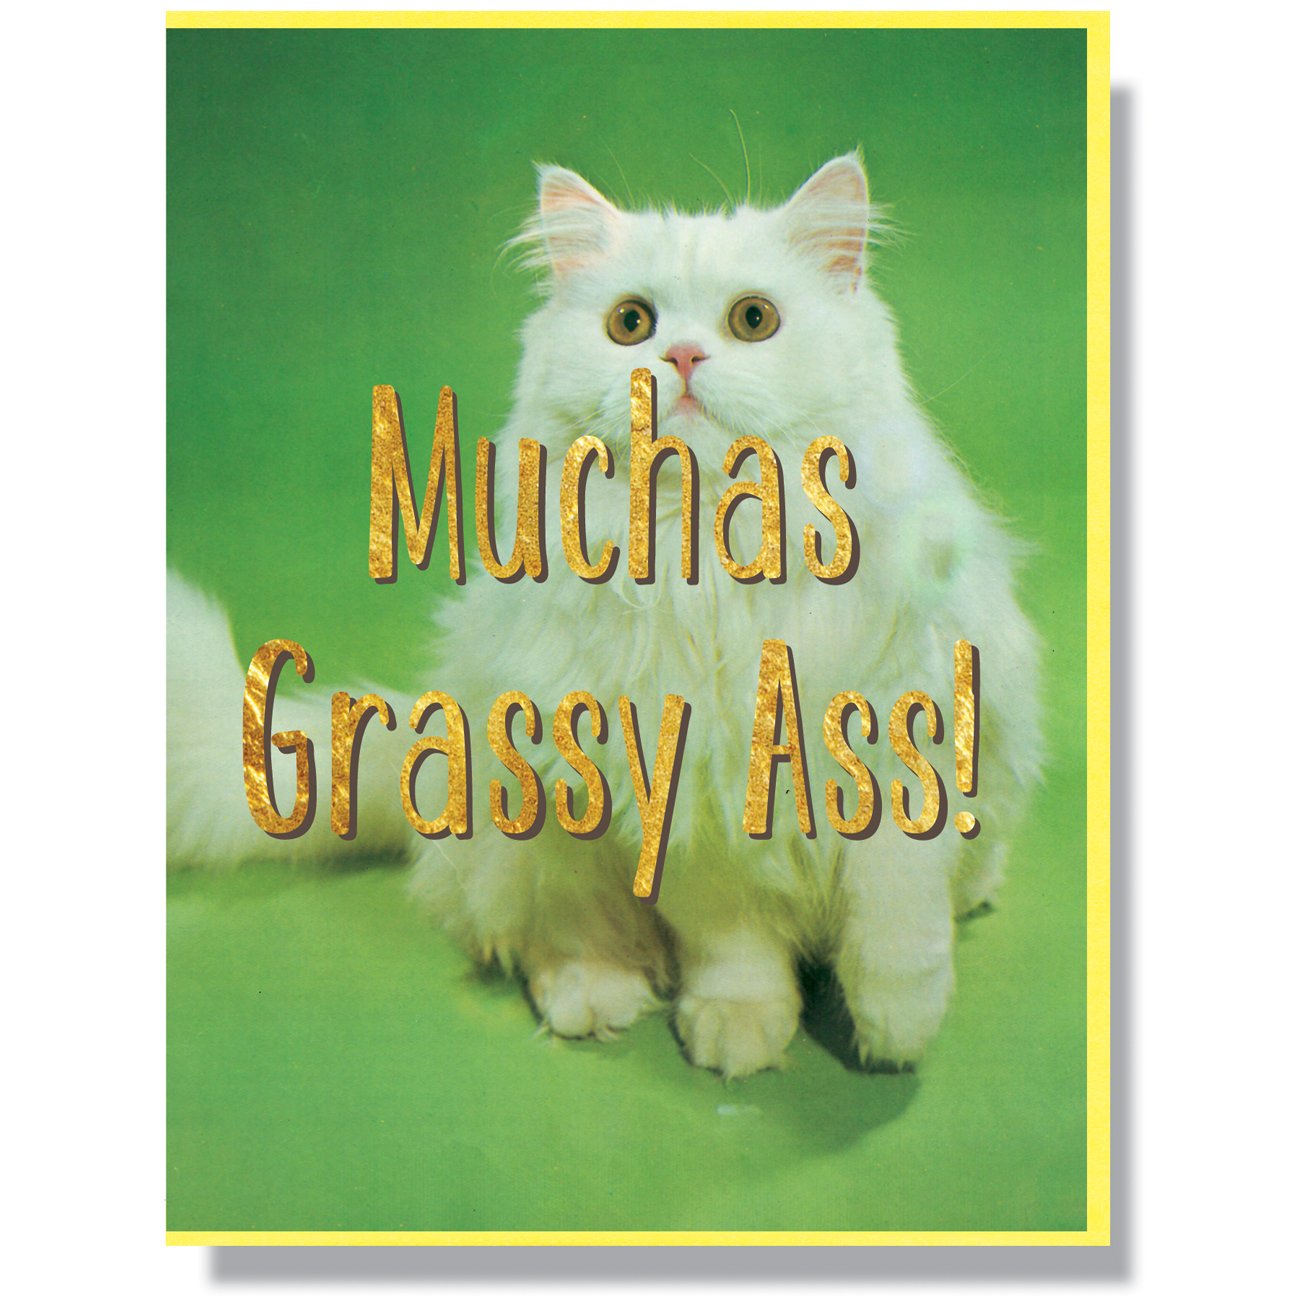 Muchas Grassy Ass Card